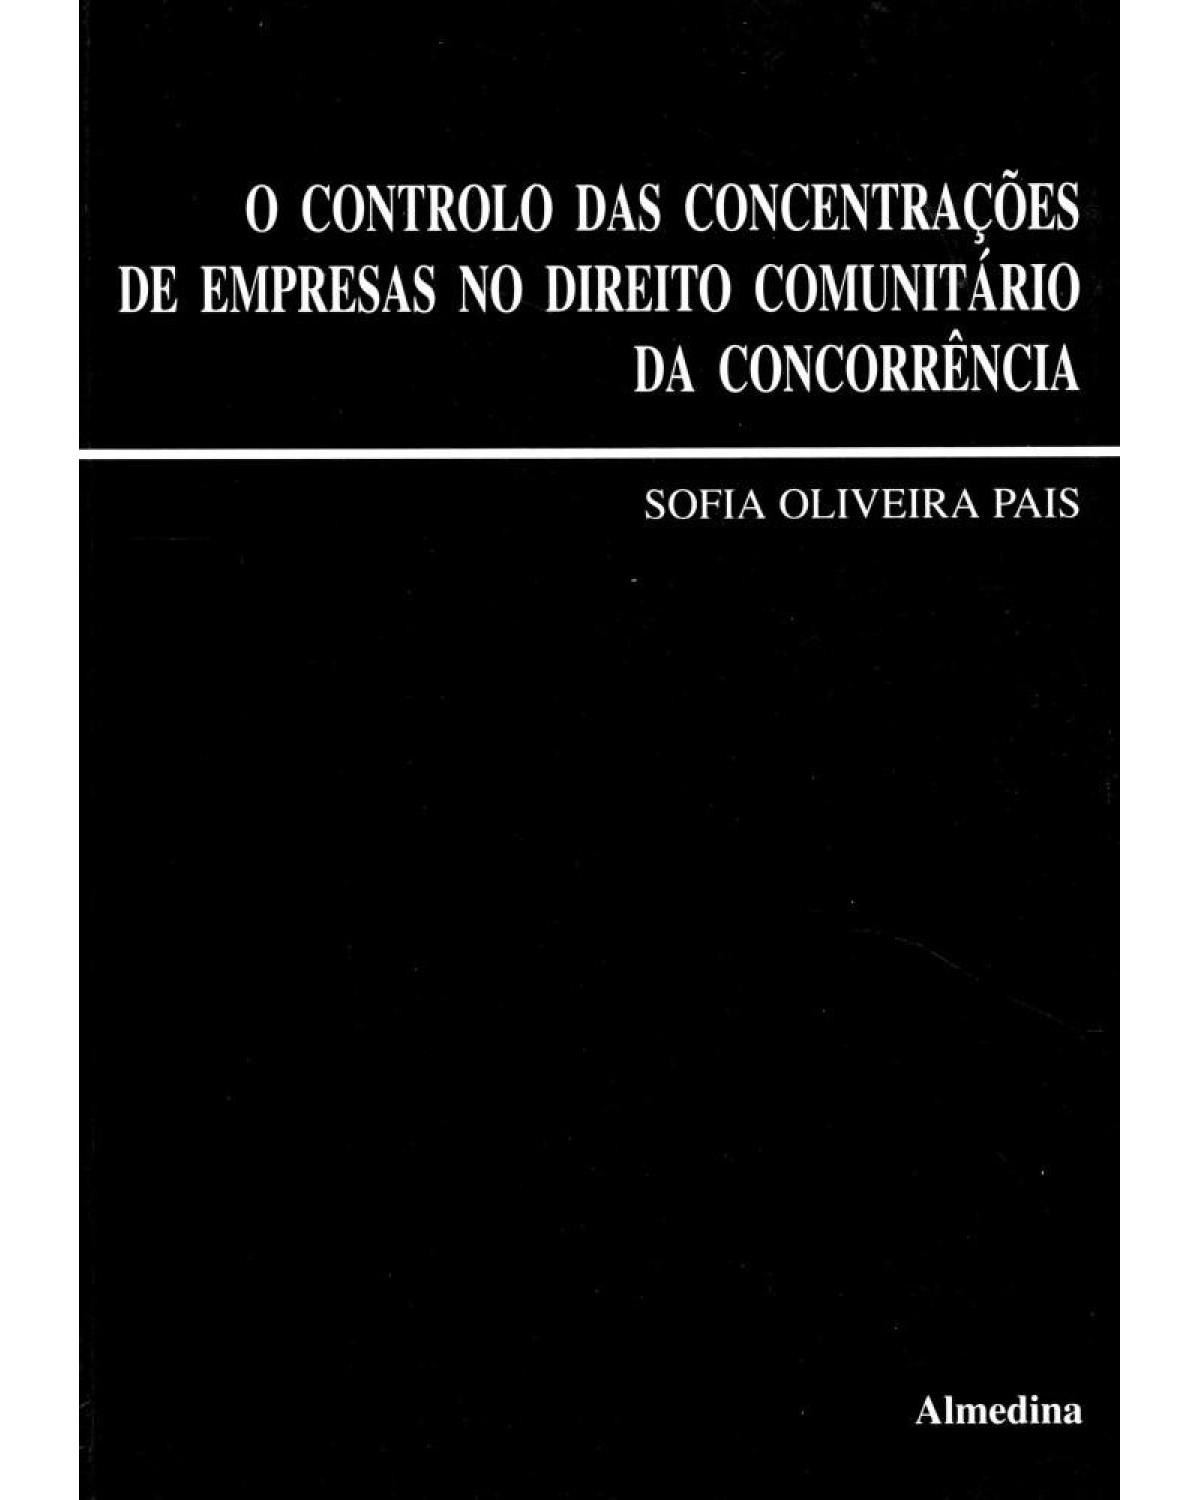 O controlo das concentrações de empresas no direito comunitário da concorrência - 1ª Edição | 1996